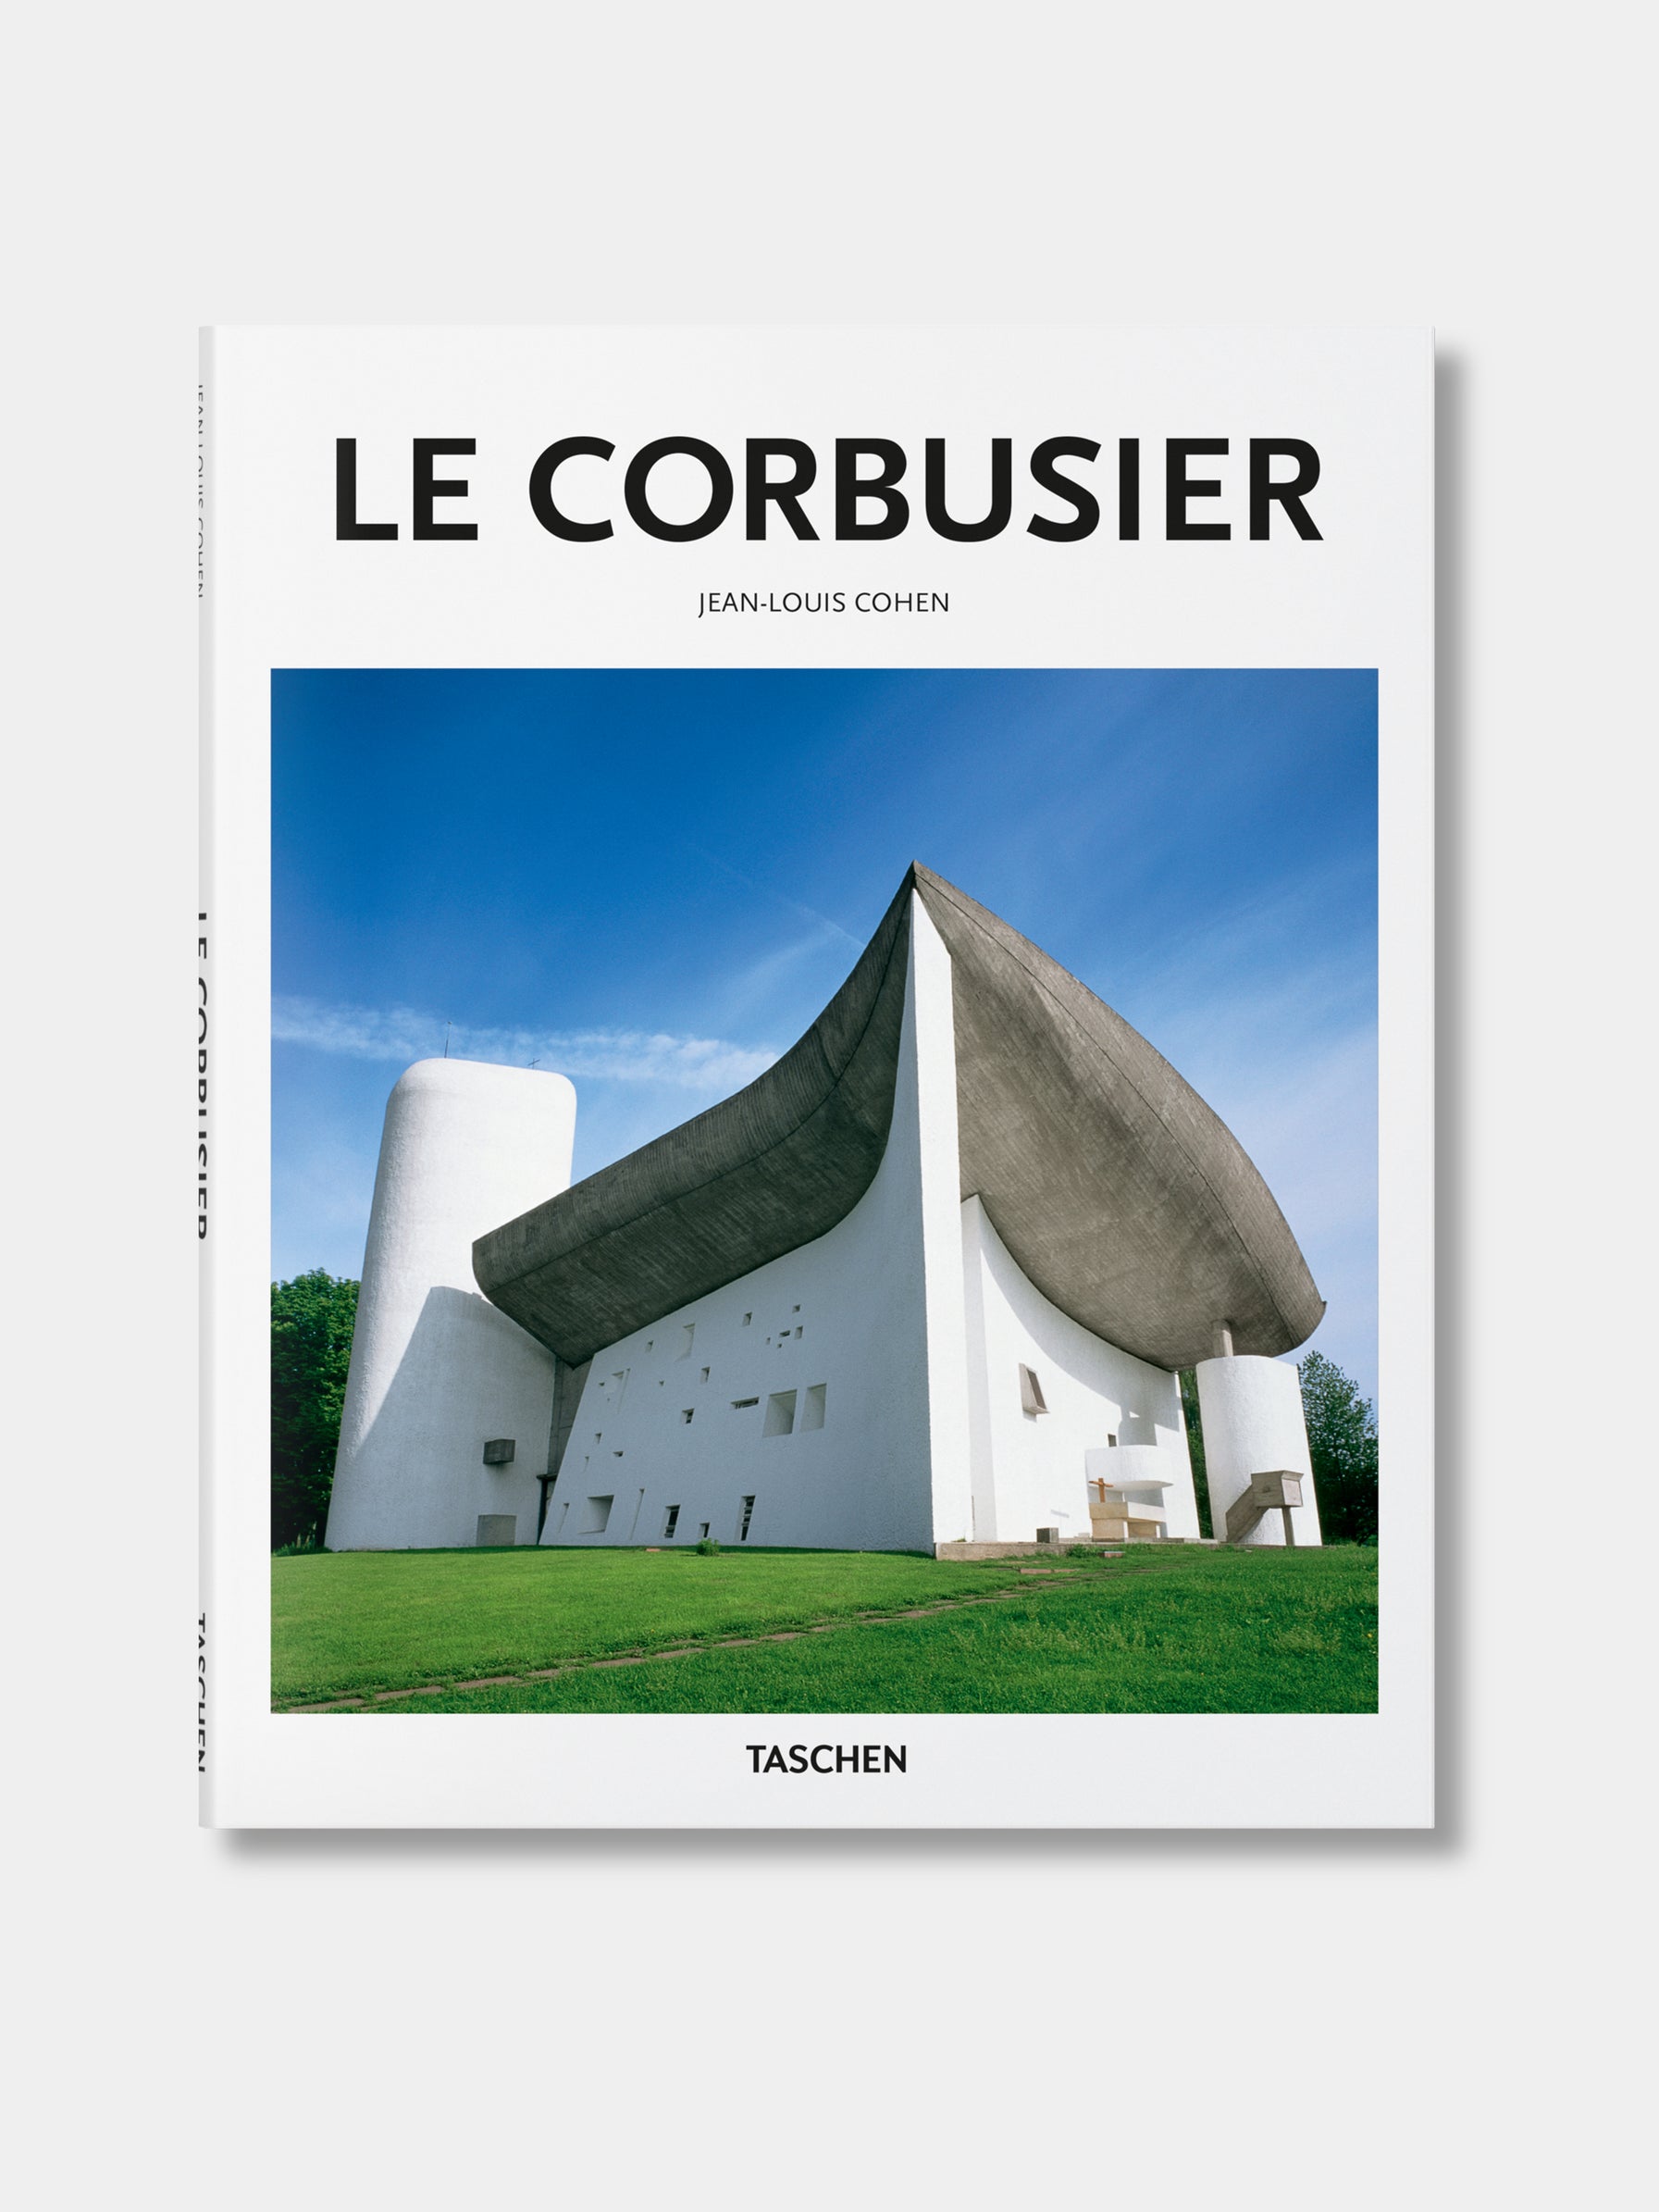 Kauchy_Taschen_Arch_Le_Corbusier